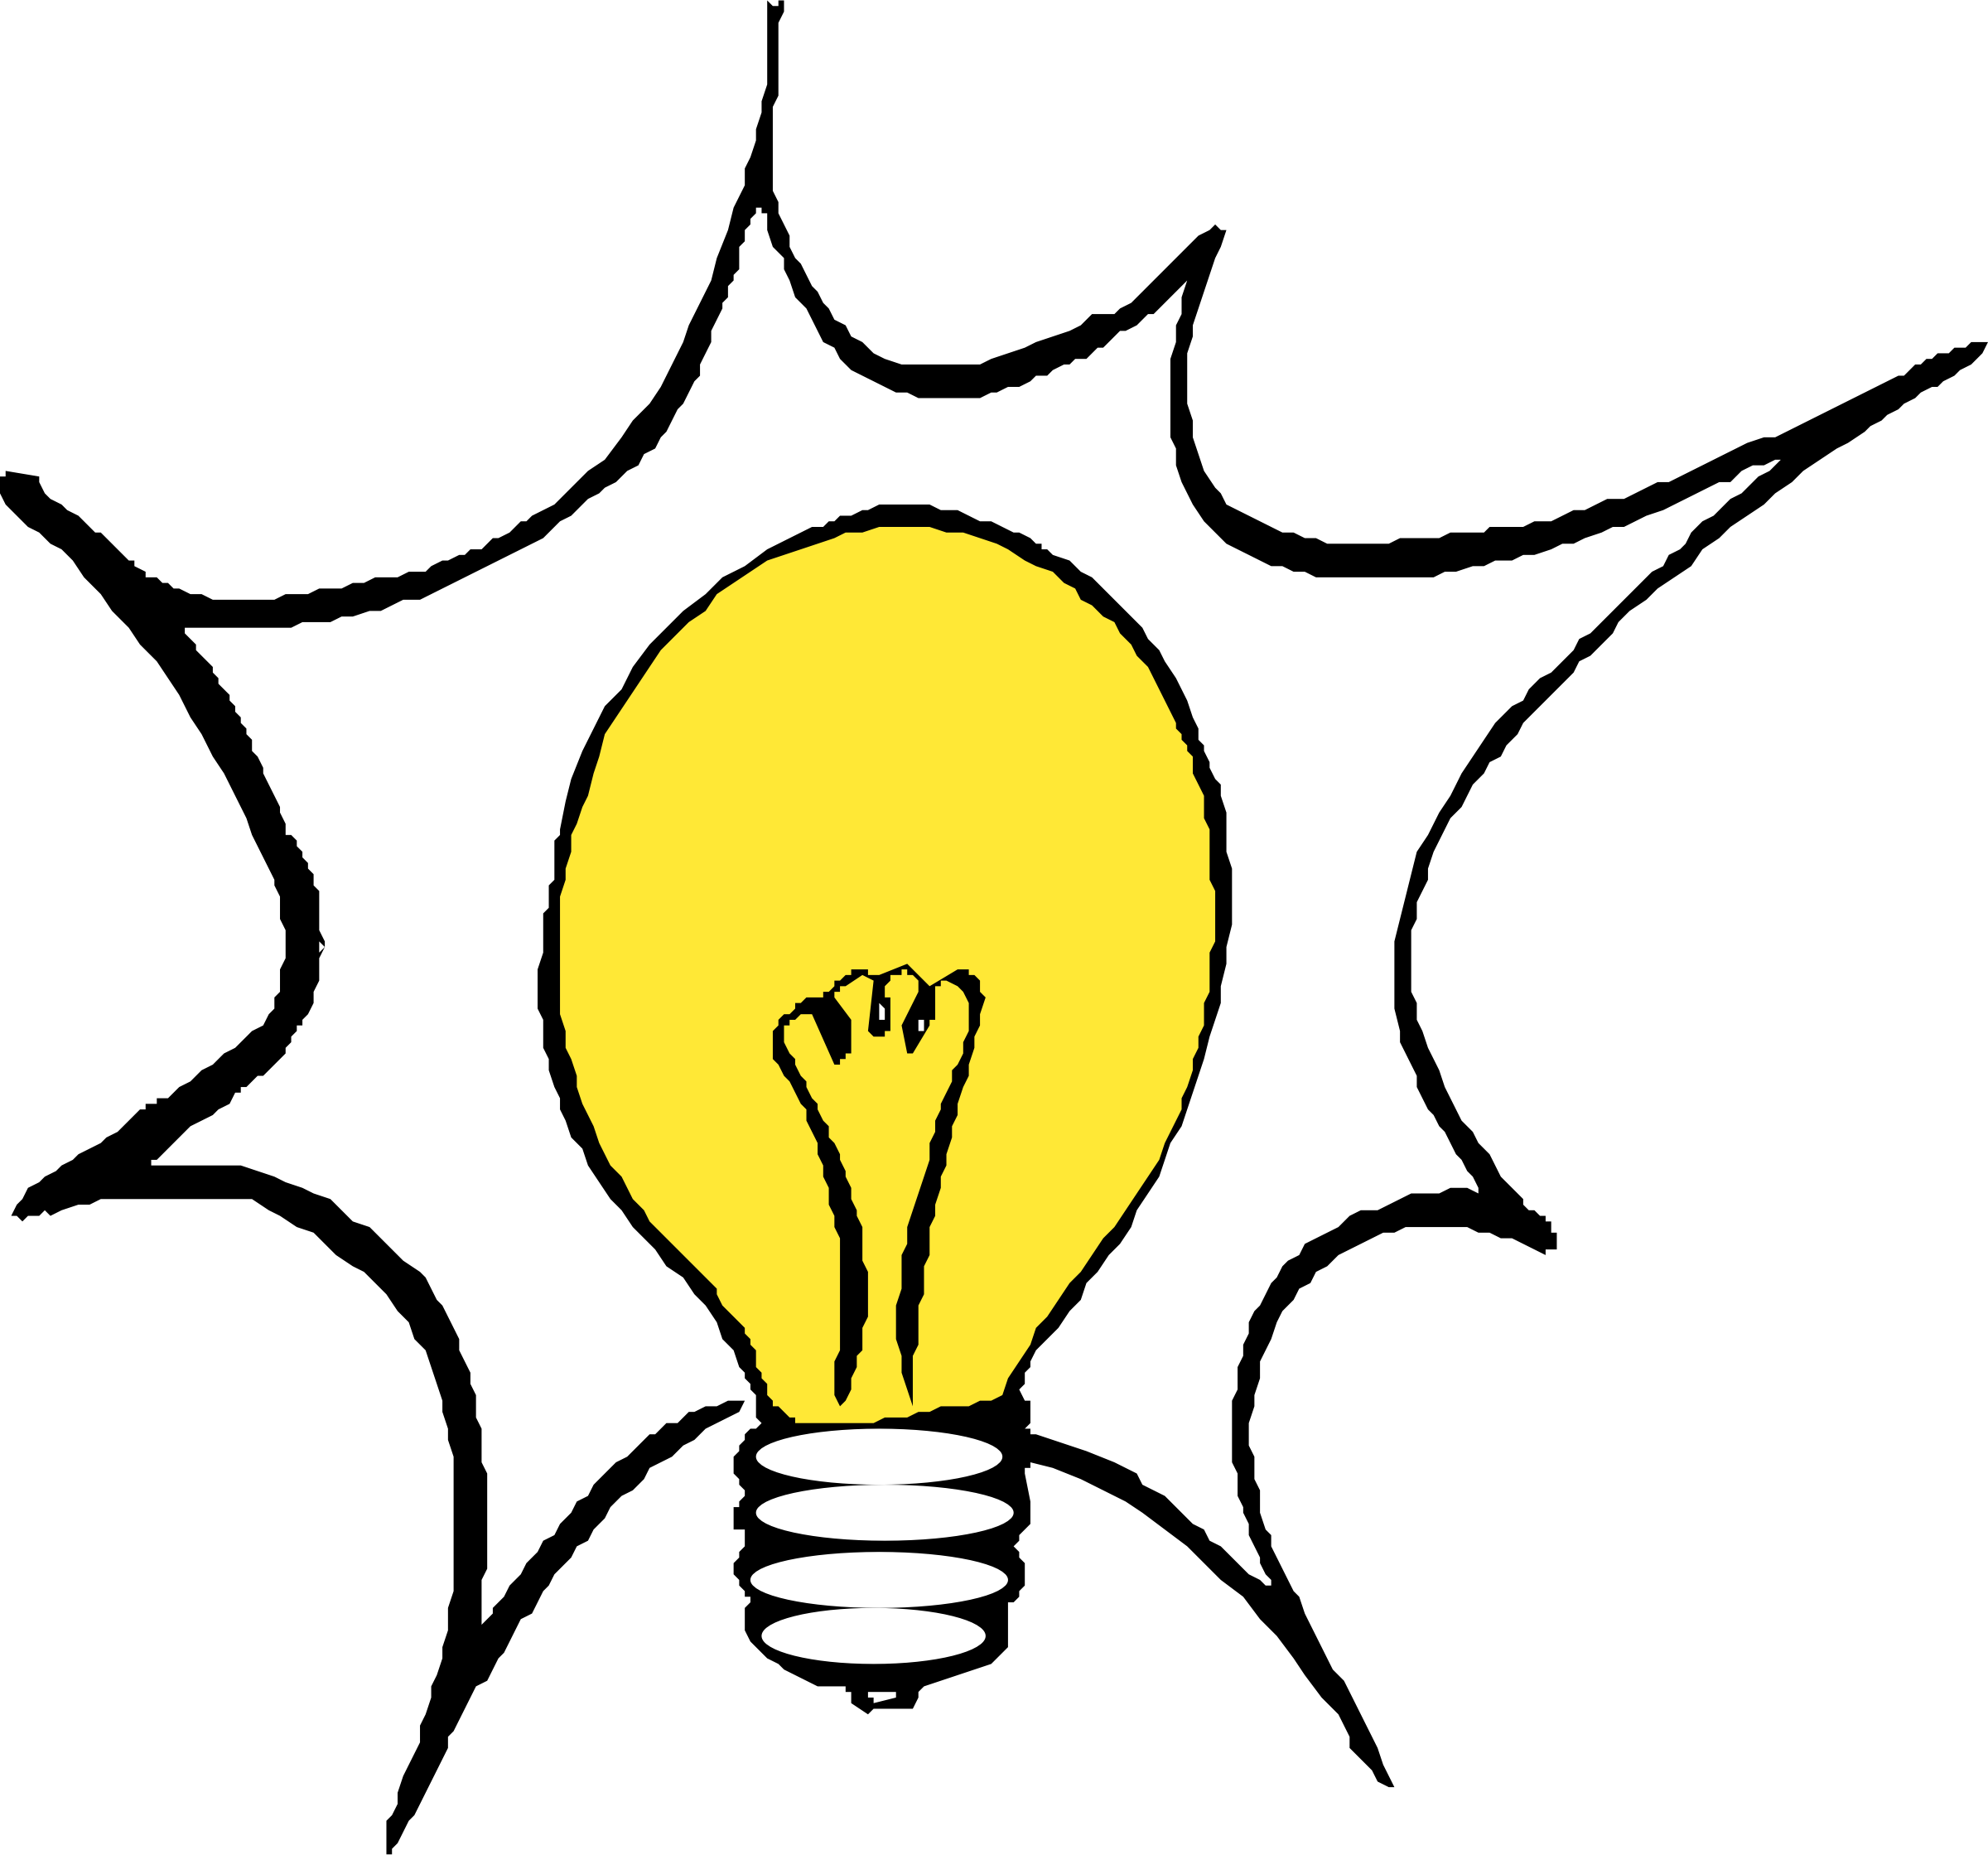 Lightbulb light bulb clip art at vector clip art 2 image